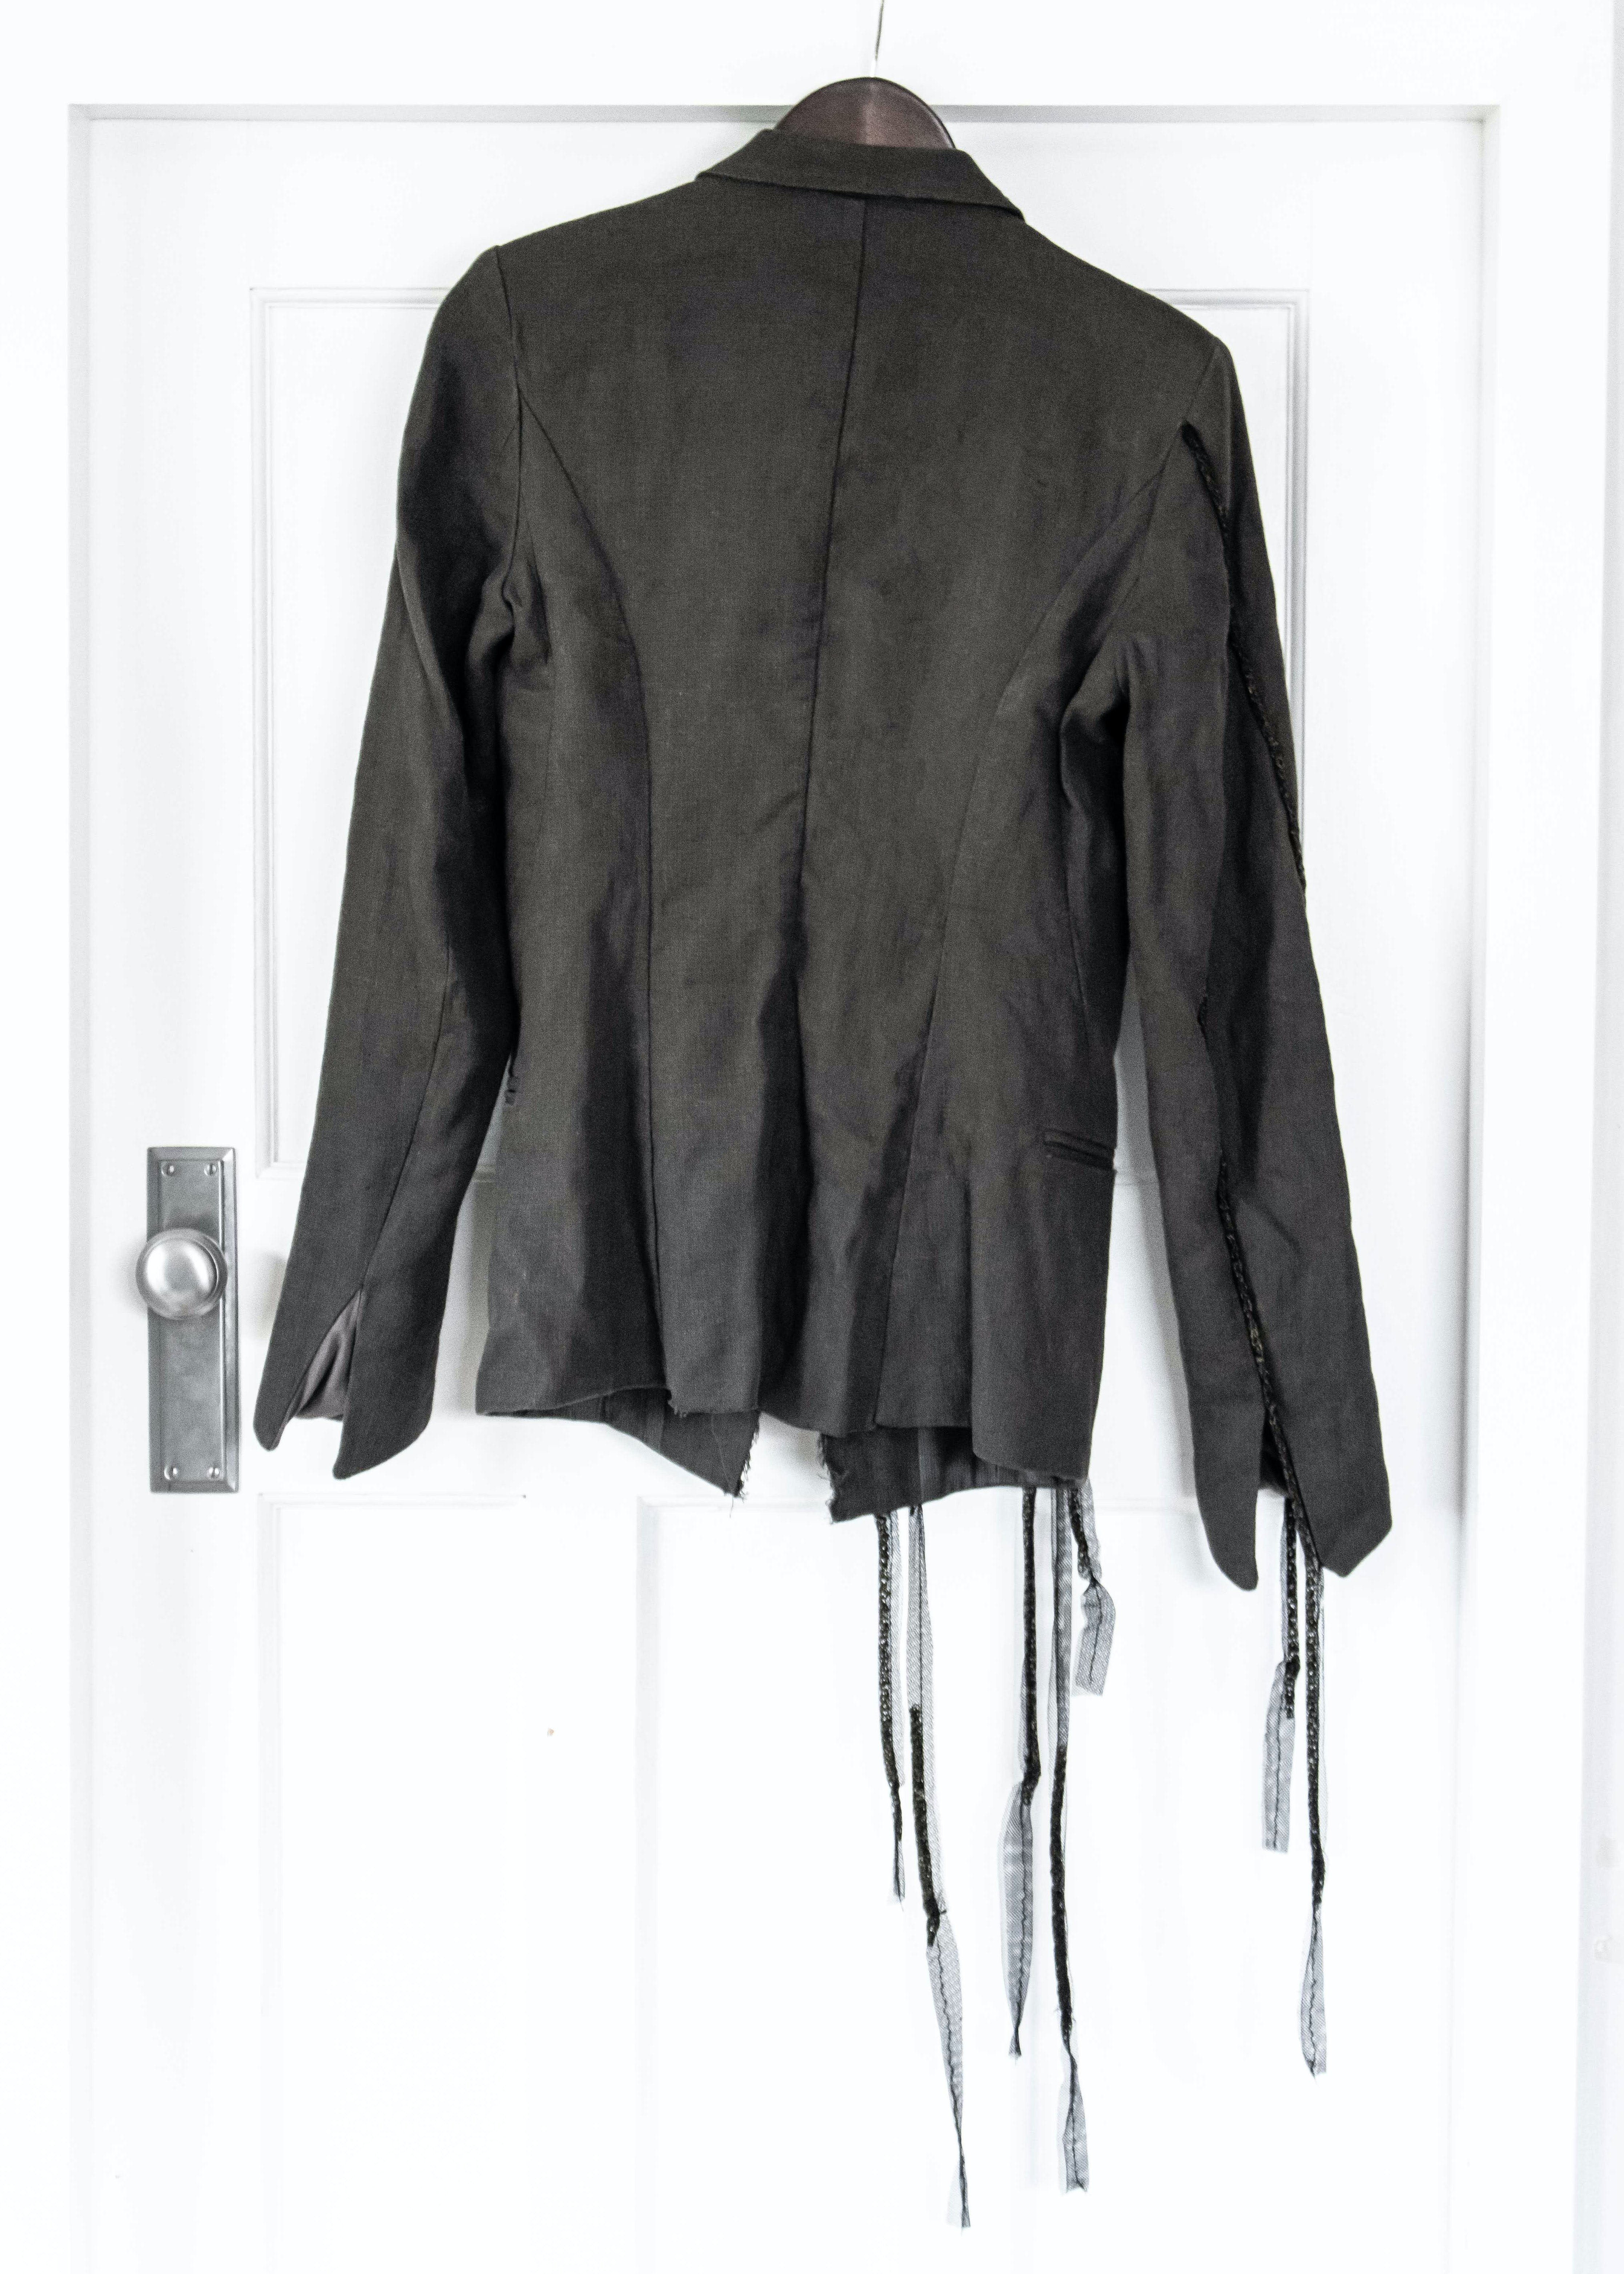 Cotton/Linen Chain Detail Jacket - 2